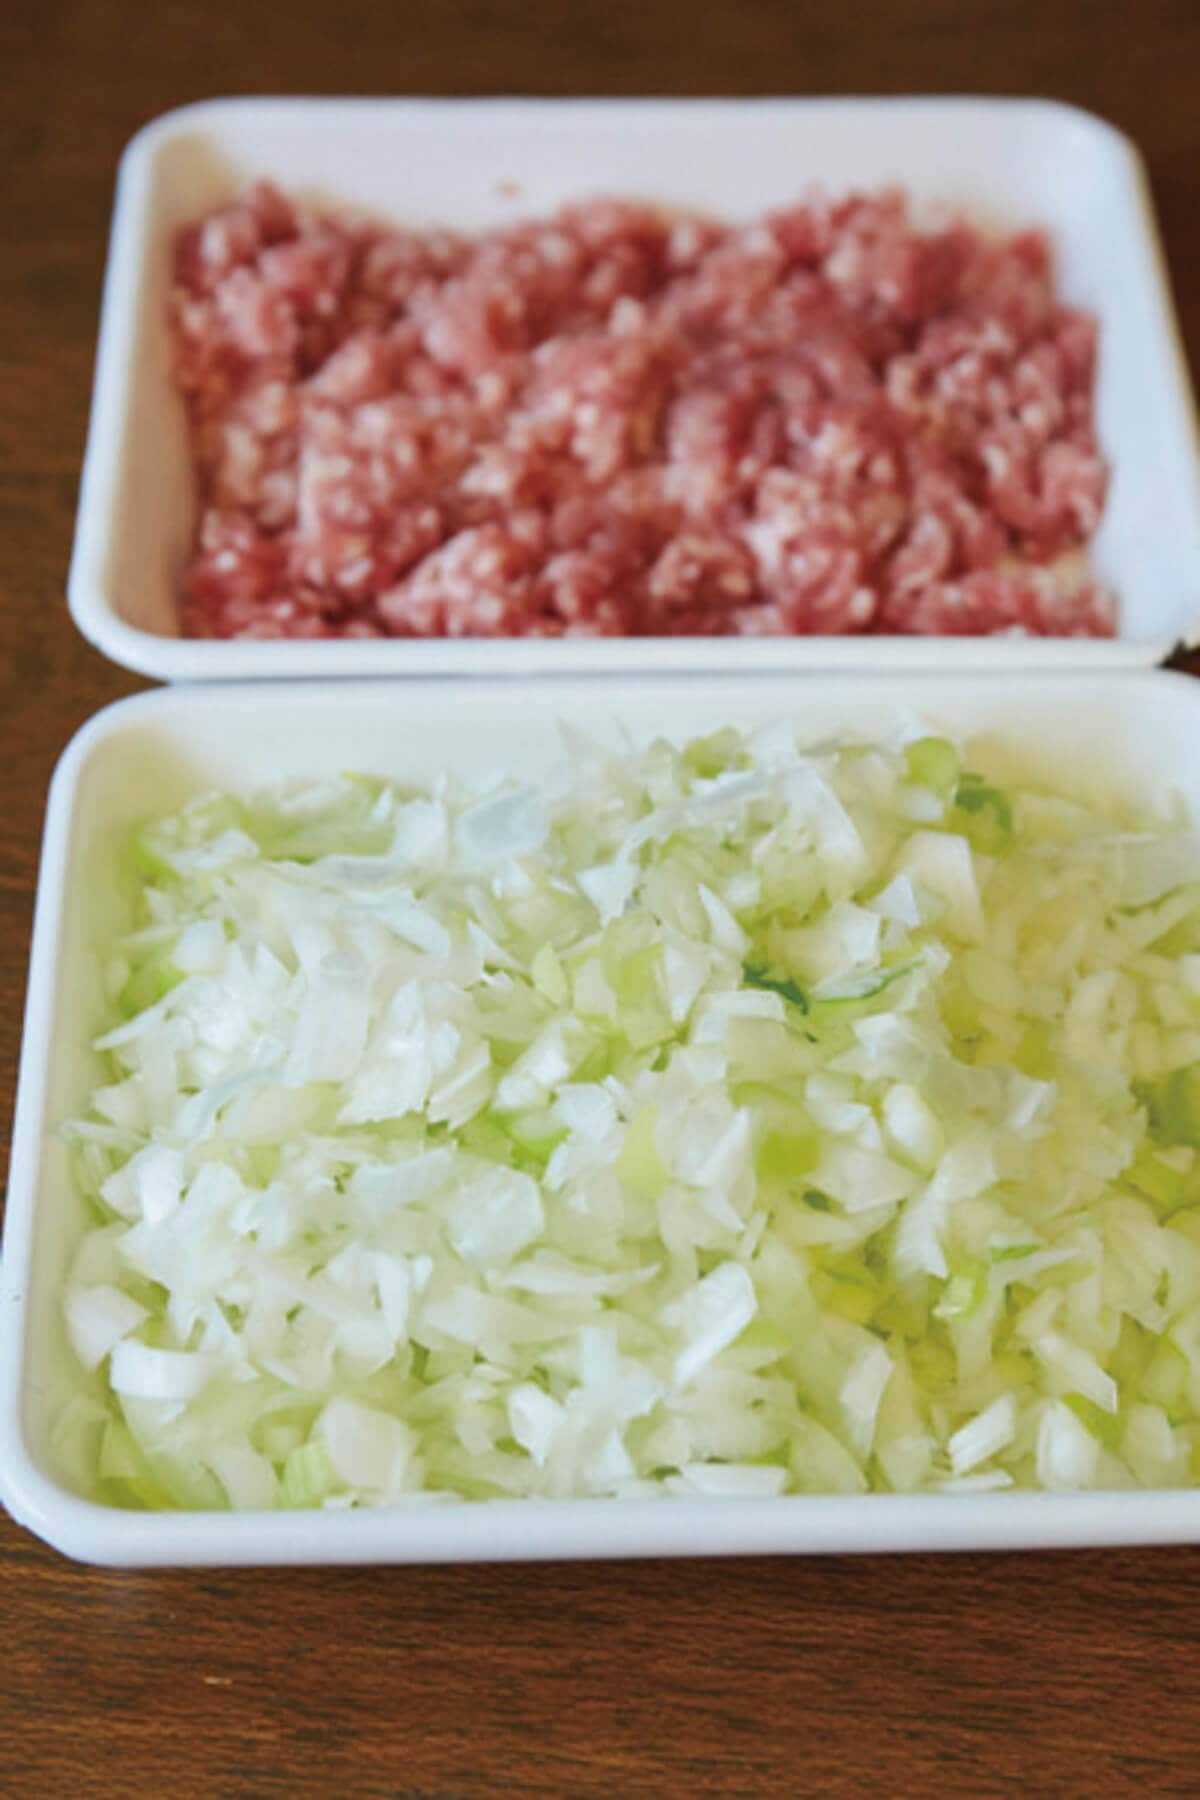 長ねぎのみじん切りは、肉と同量でたっぷりと。切り方は表裏に斜めに切り目を入れてから、小口切りにすると簡単